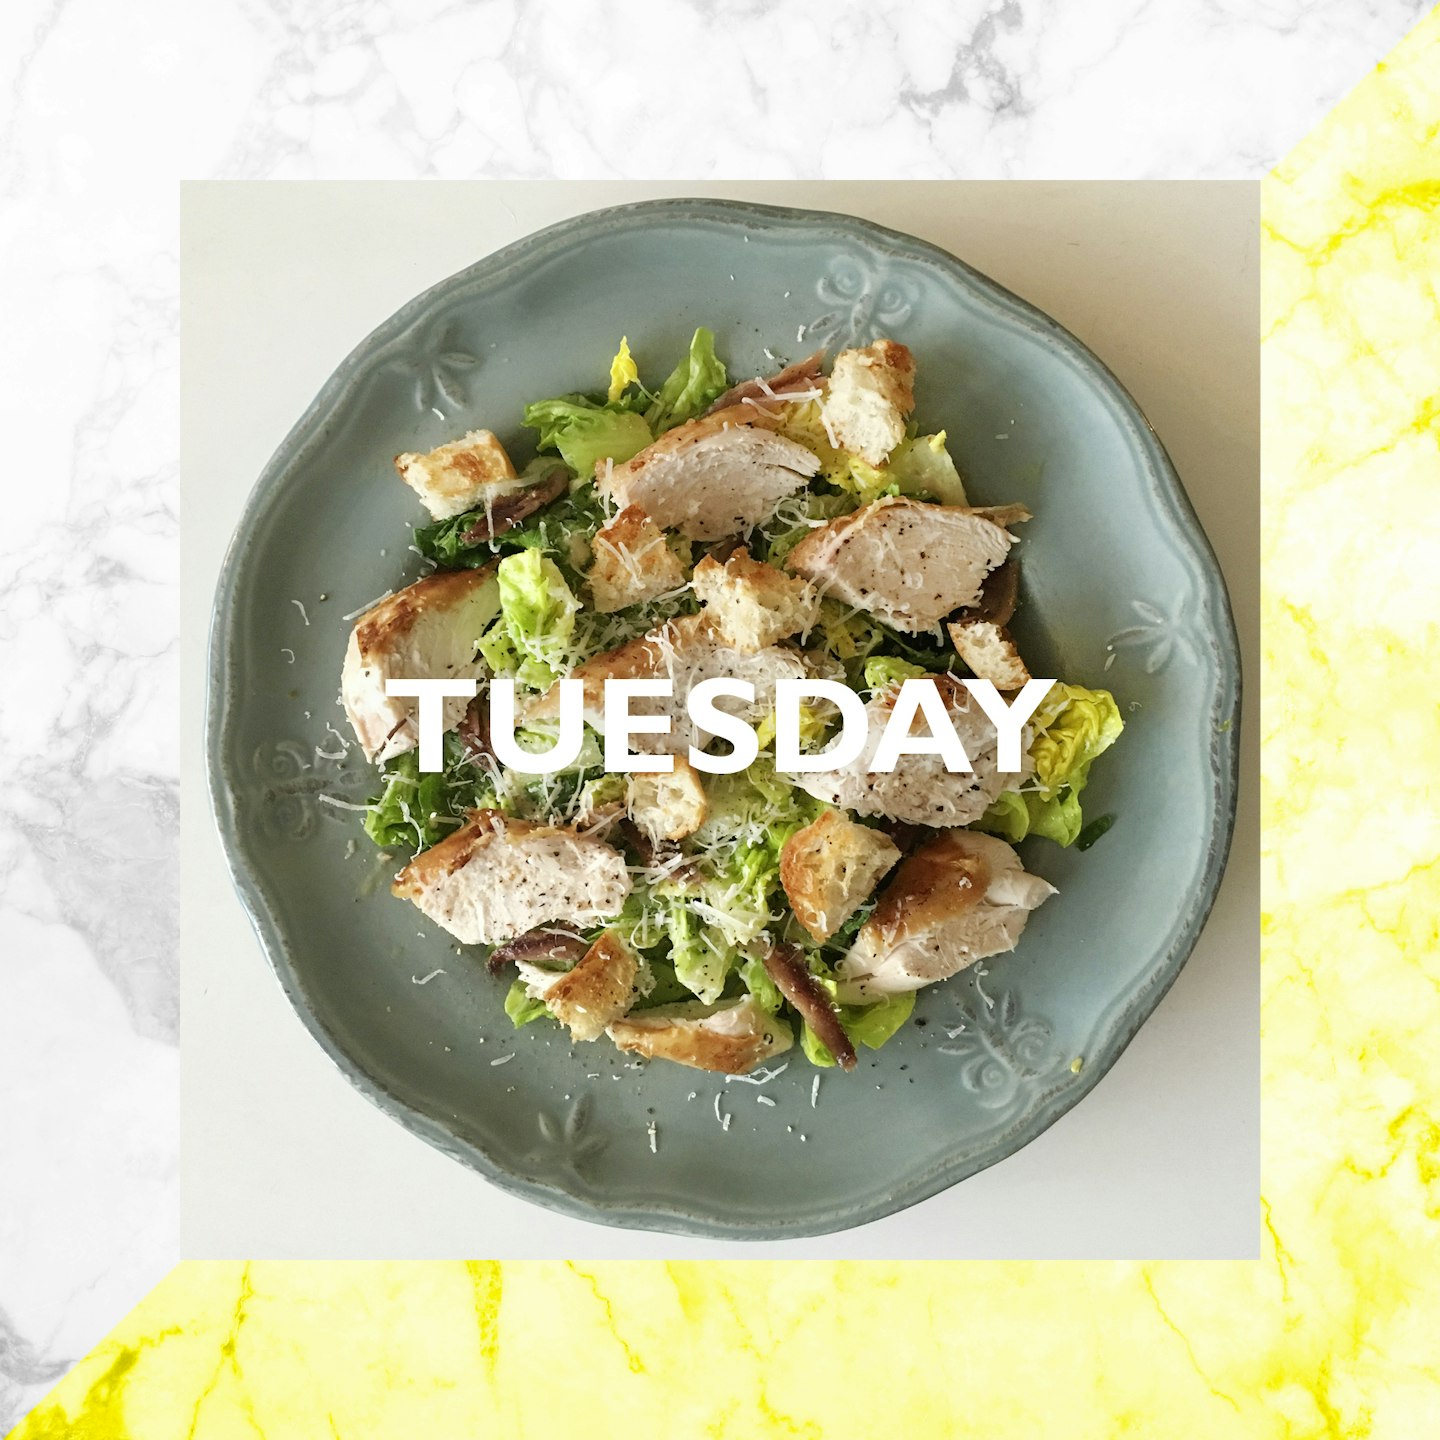 Tuesday – Chicken Caesar Salad, 20 mins